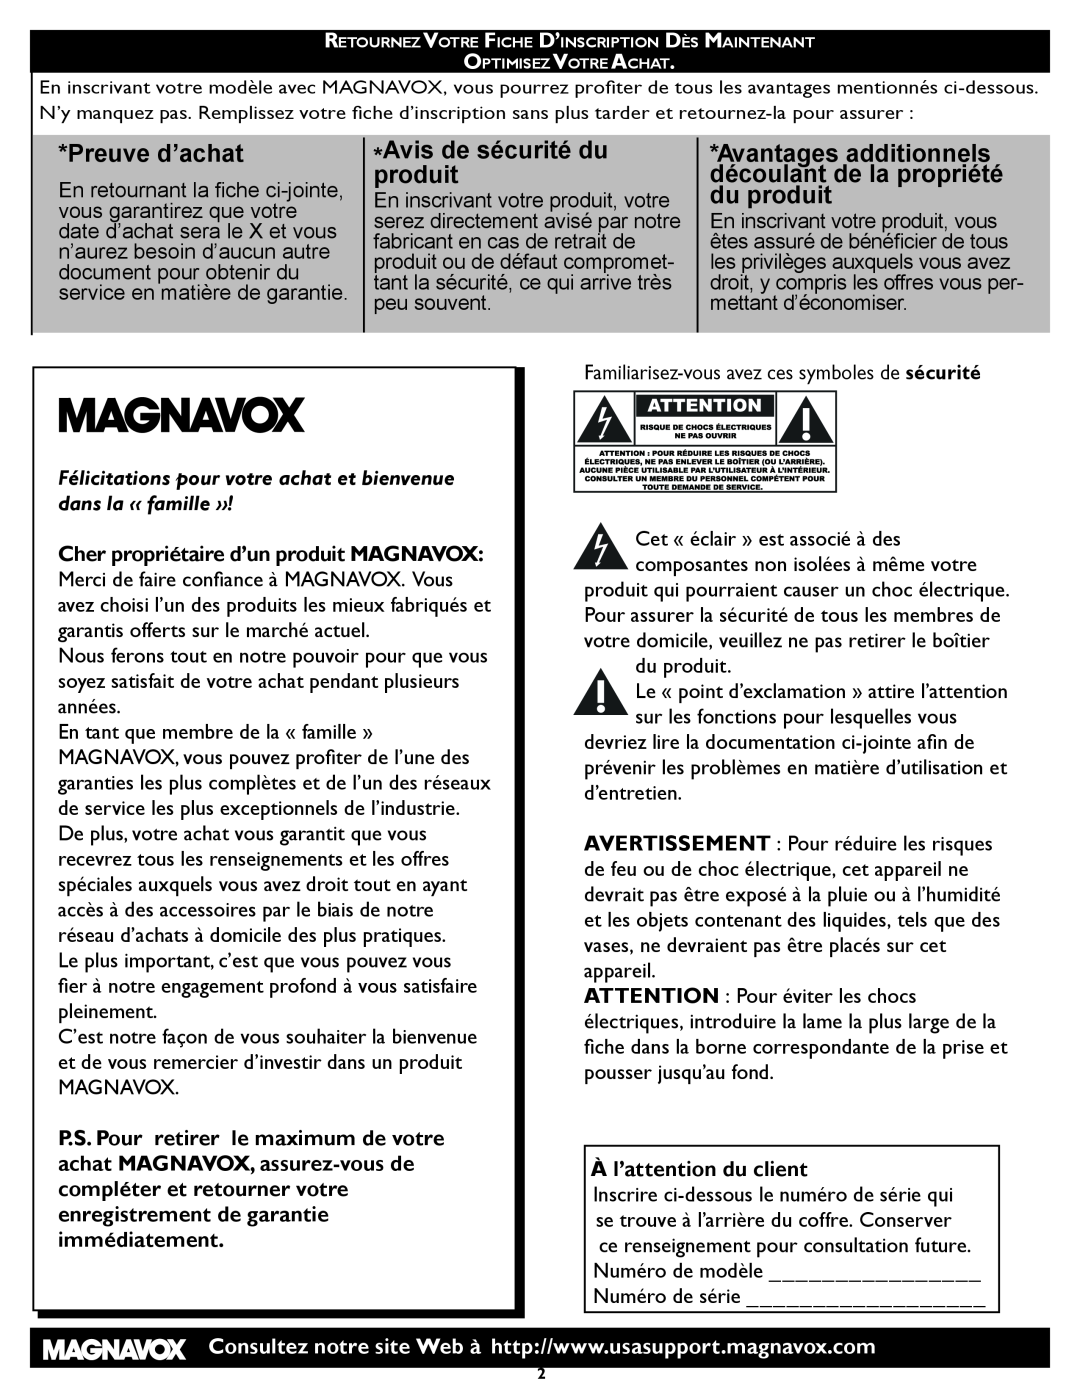 Magnavox 26MD/32MD251D user manual Preuve d’achat, Avis de sécurité du produit, À l’attention du client 